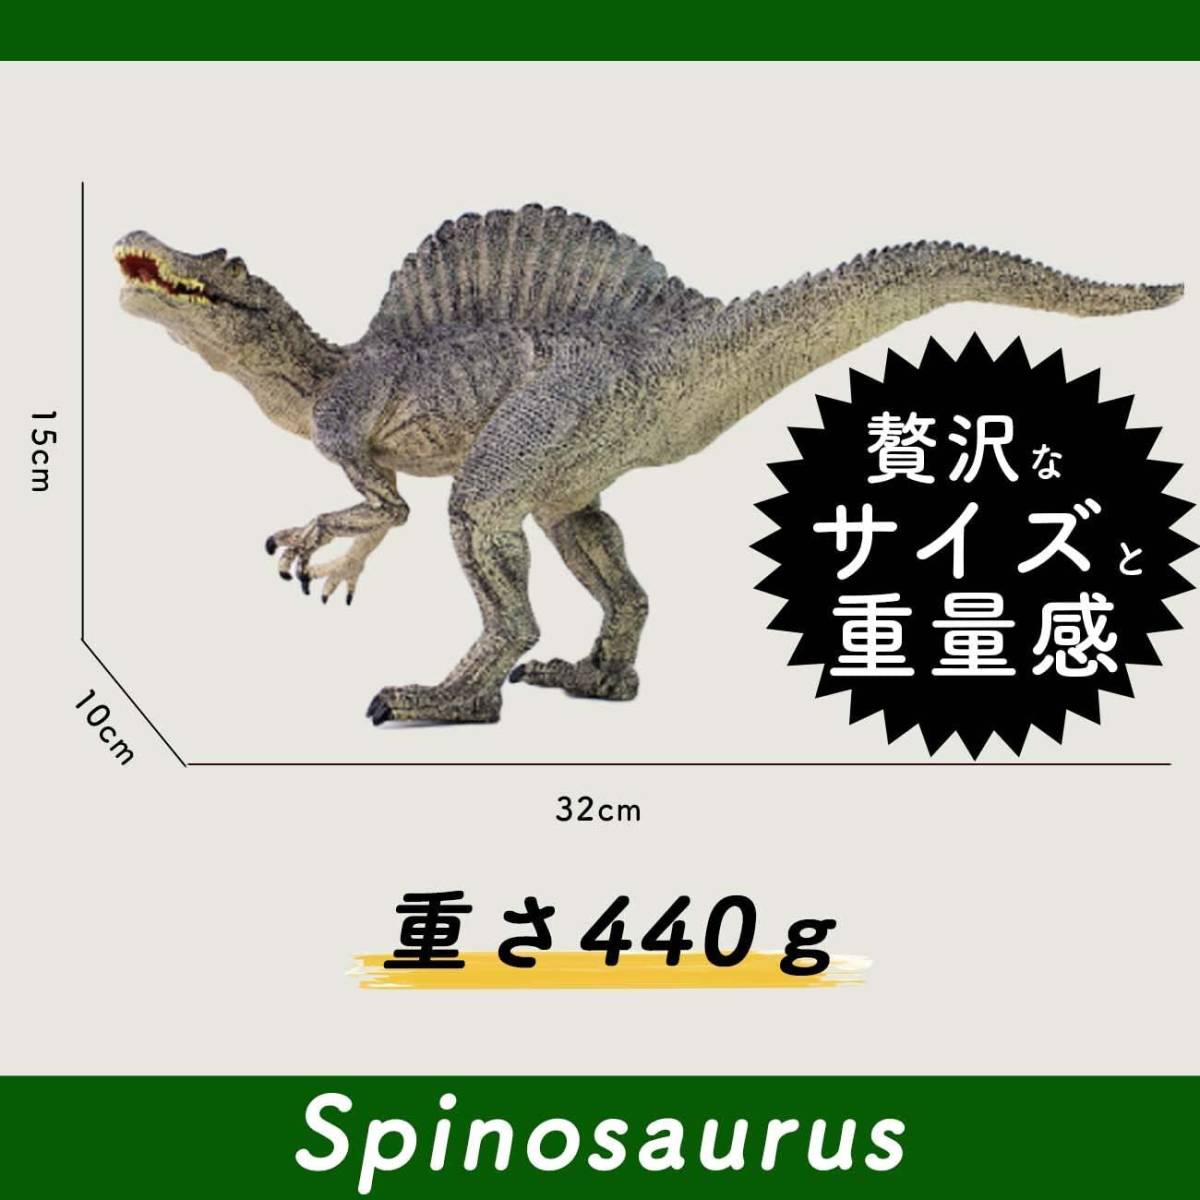 超リアル スピノサウルス 恐竜 フィギュア リアル 模型 ジュラ紀 30㎝級 爬虫類 迫力 肉食 子供玩具 プレゼント 恐竜おもちゃ ごっこ遊び